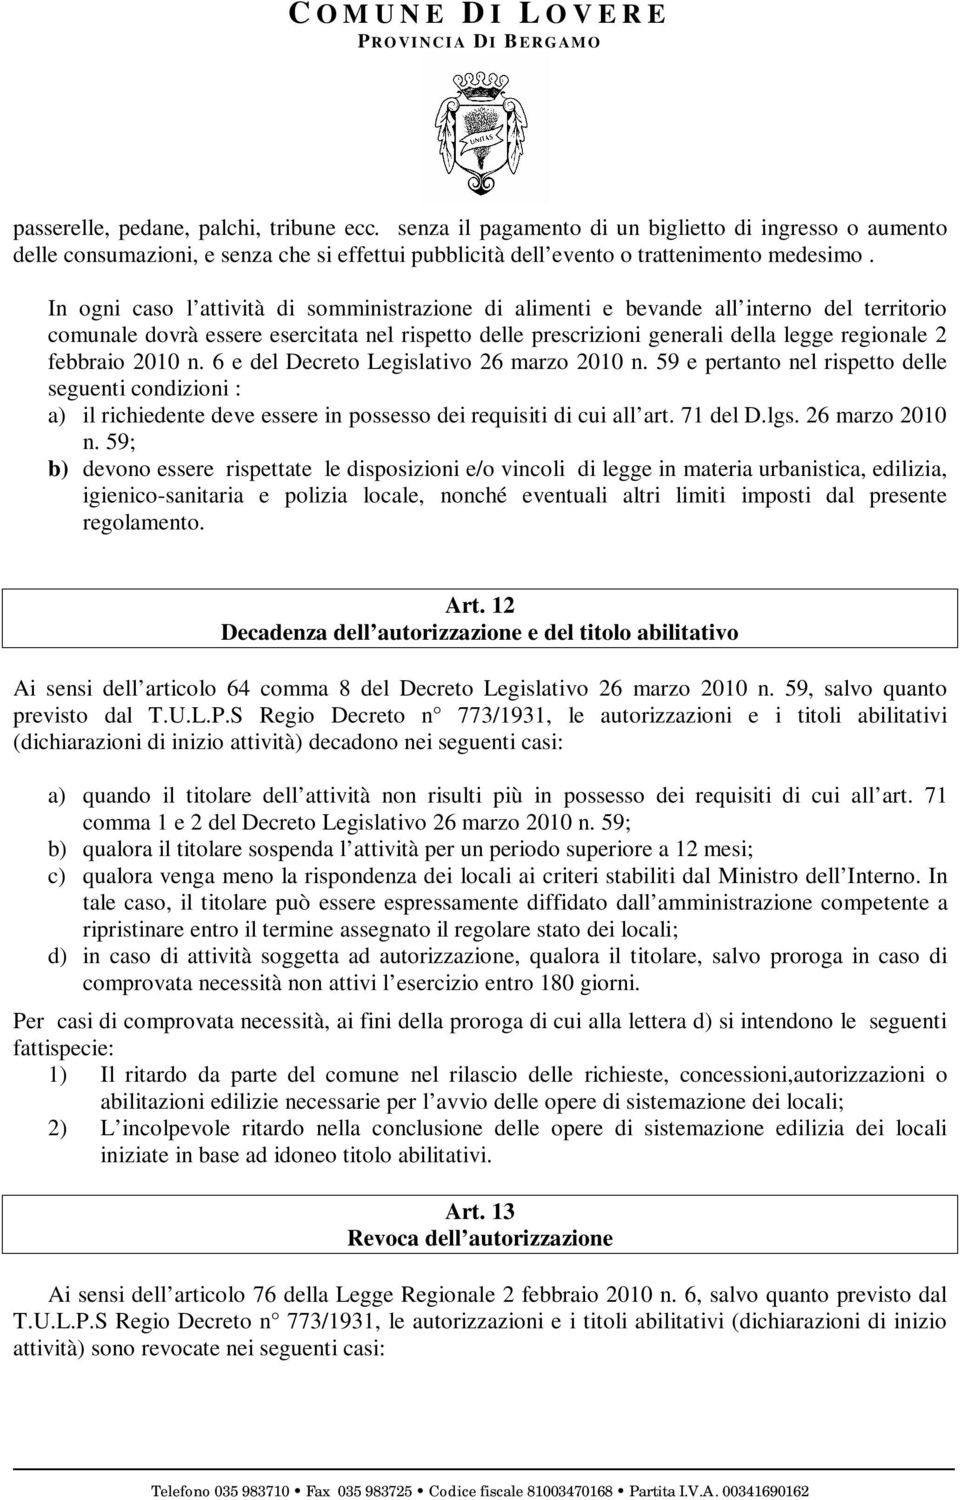 2010 n. 6 e del Decreto Legislativo 26 marzo 2010 n. 59 e pertanto nel rispetto delle seguenti condizioni : a) il richiedente deve essere in possesso dei requisiti di cui all art. 71 del D.lgs.